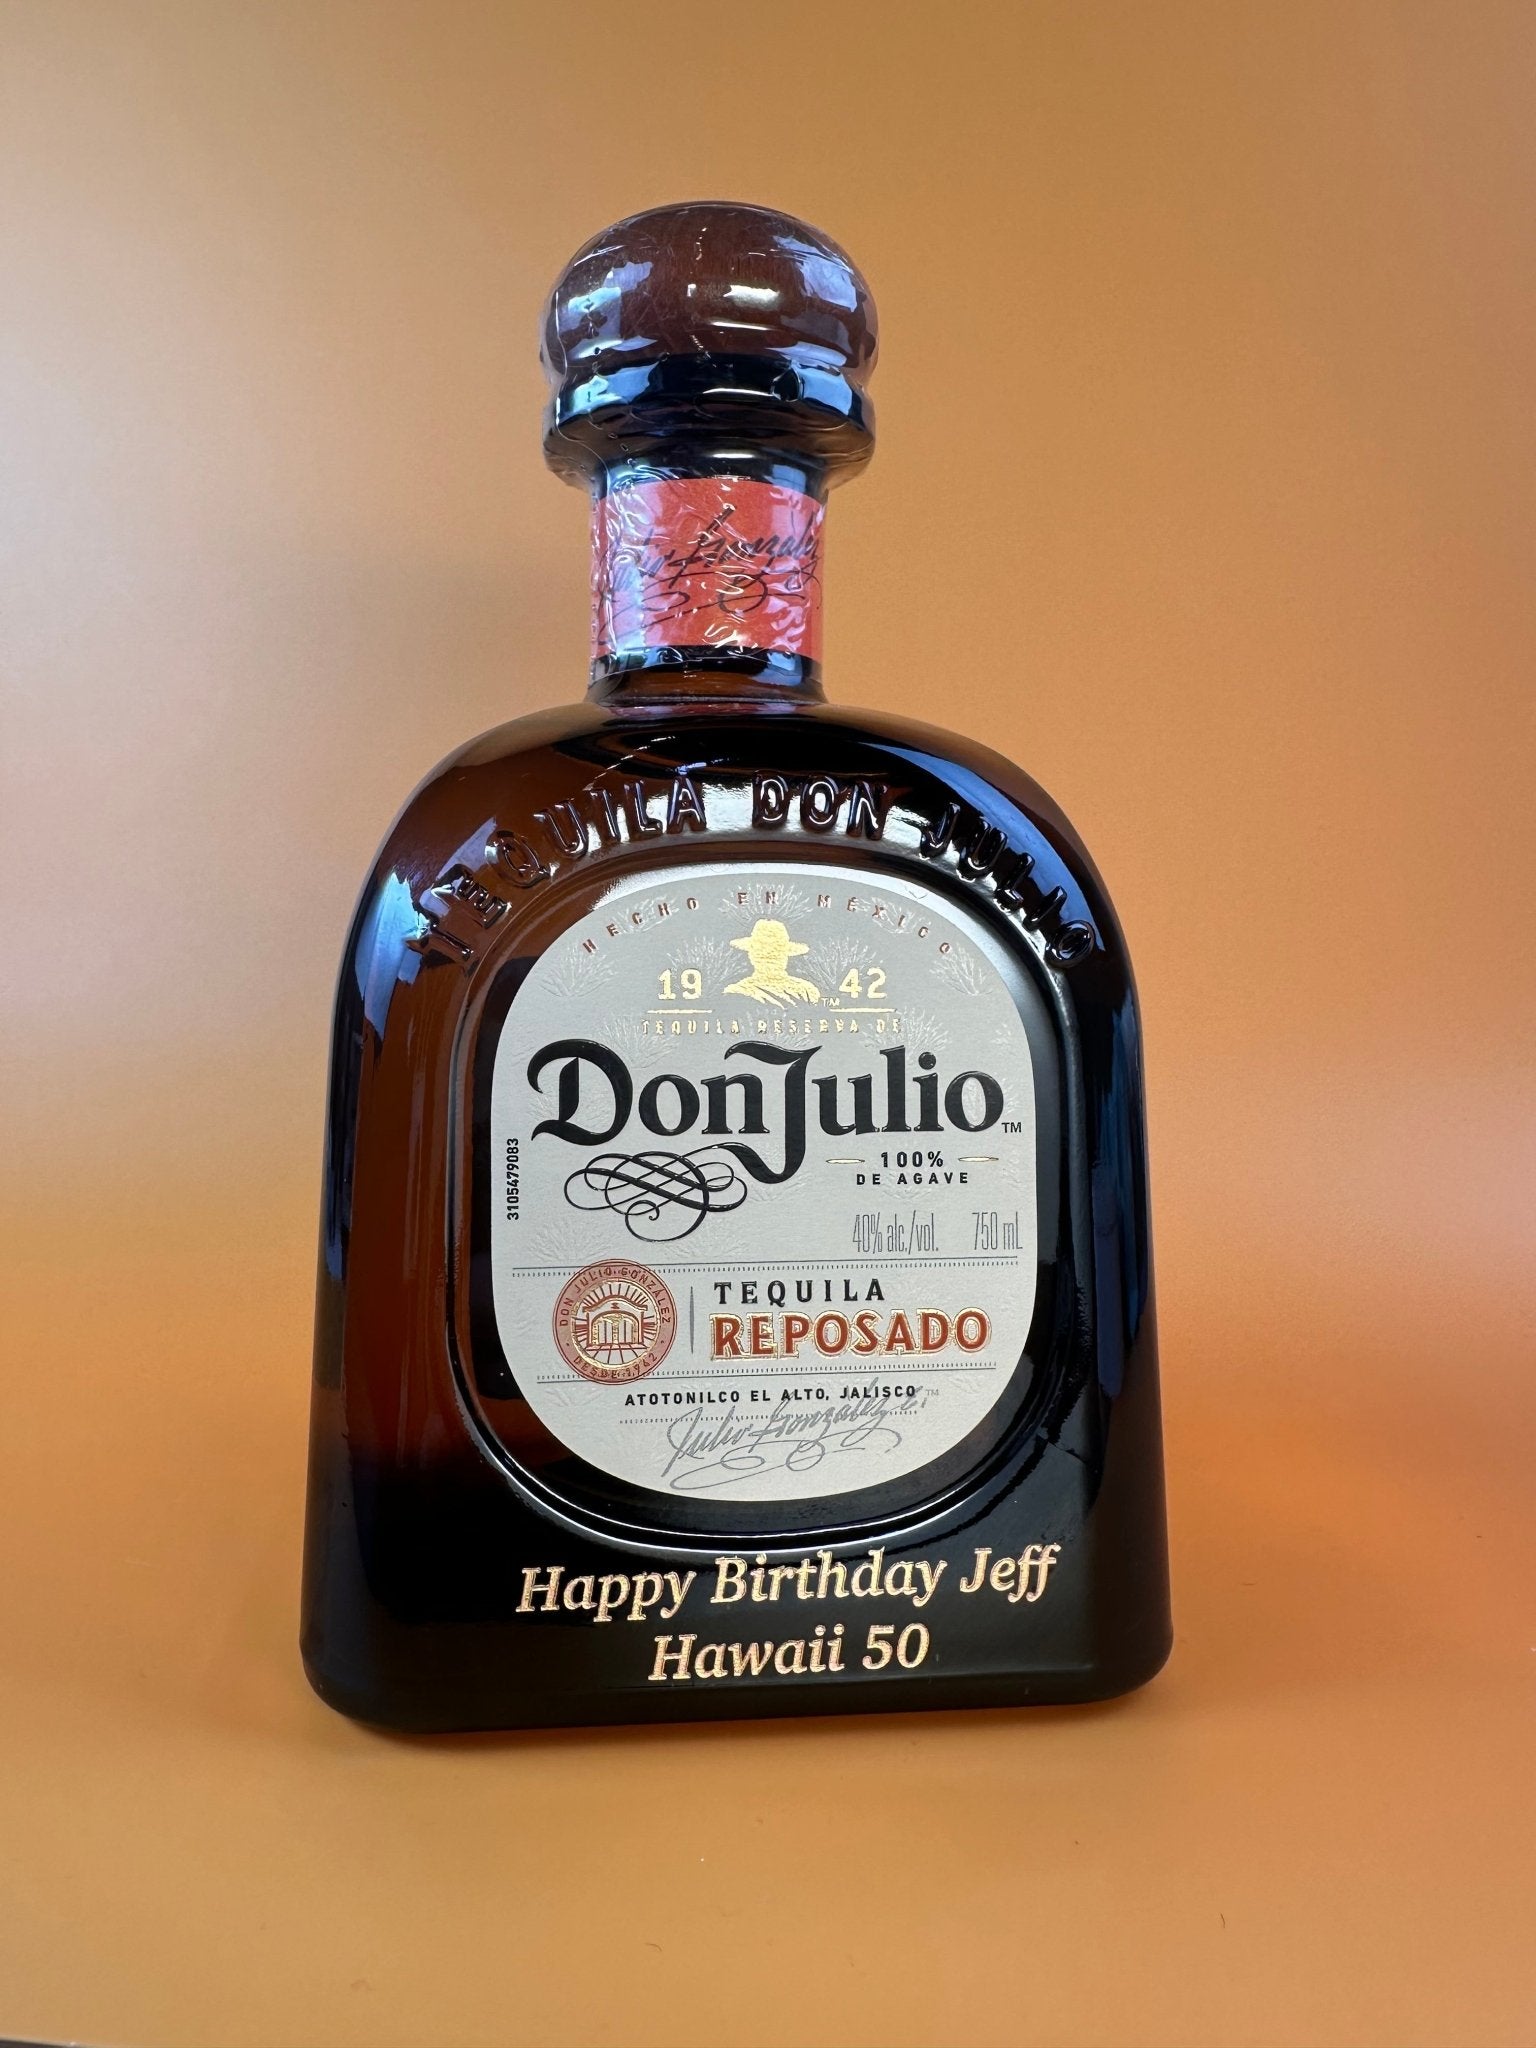 Don Julio Reposado Tequila - Bottle Engraving